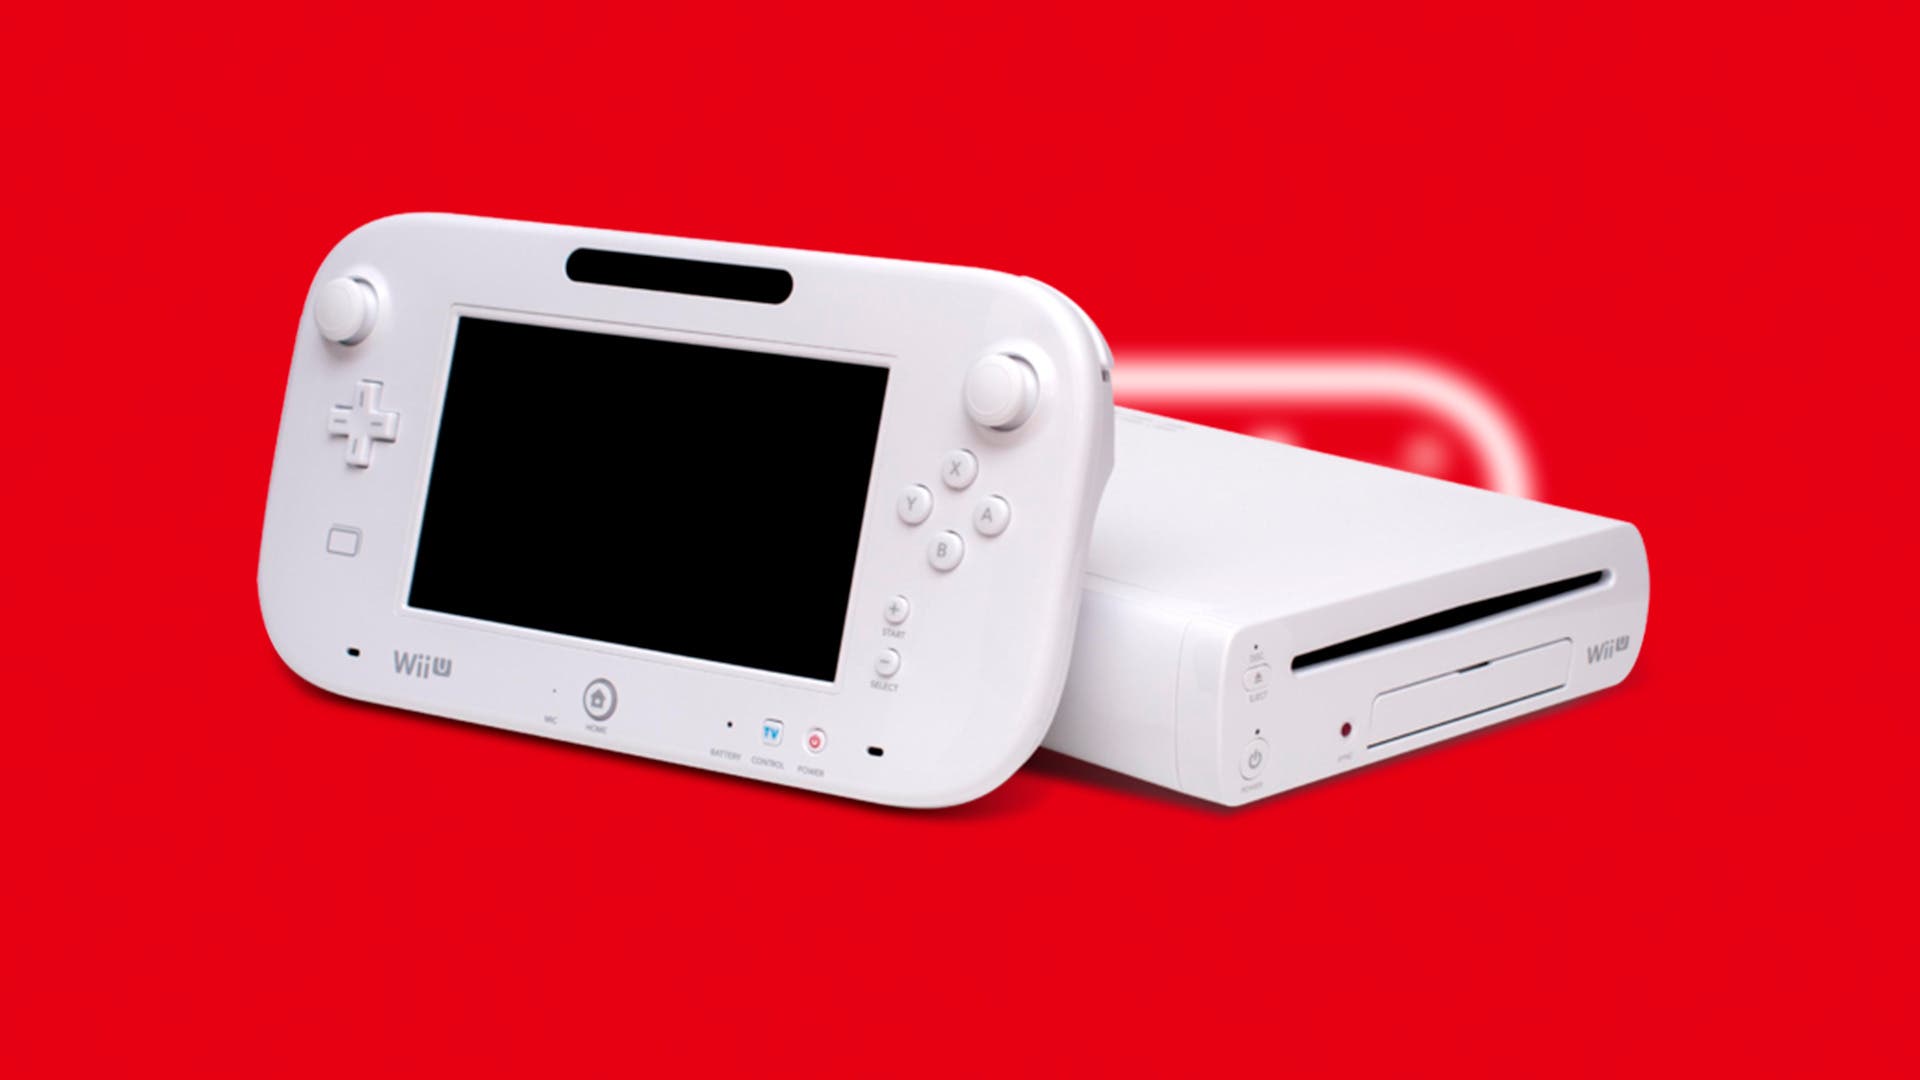 Los 20 mejores juegos de Wii U